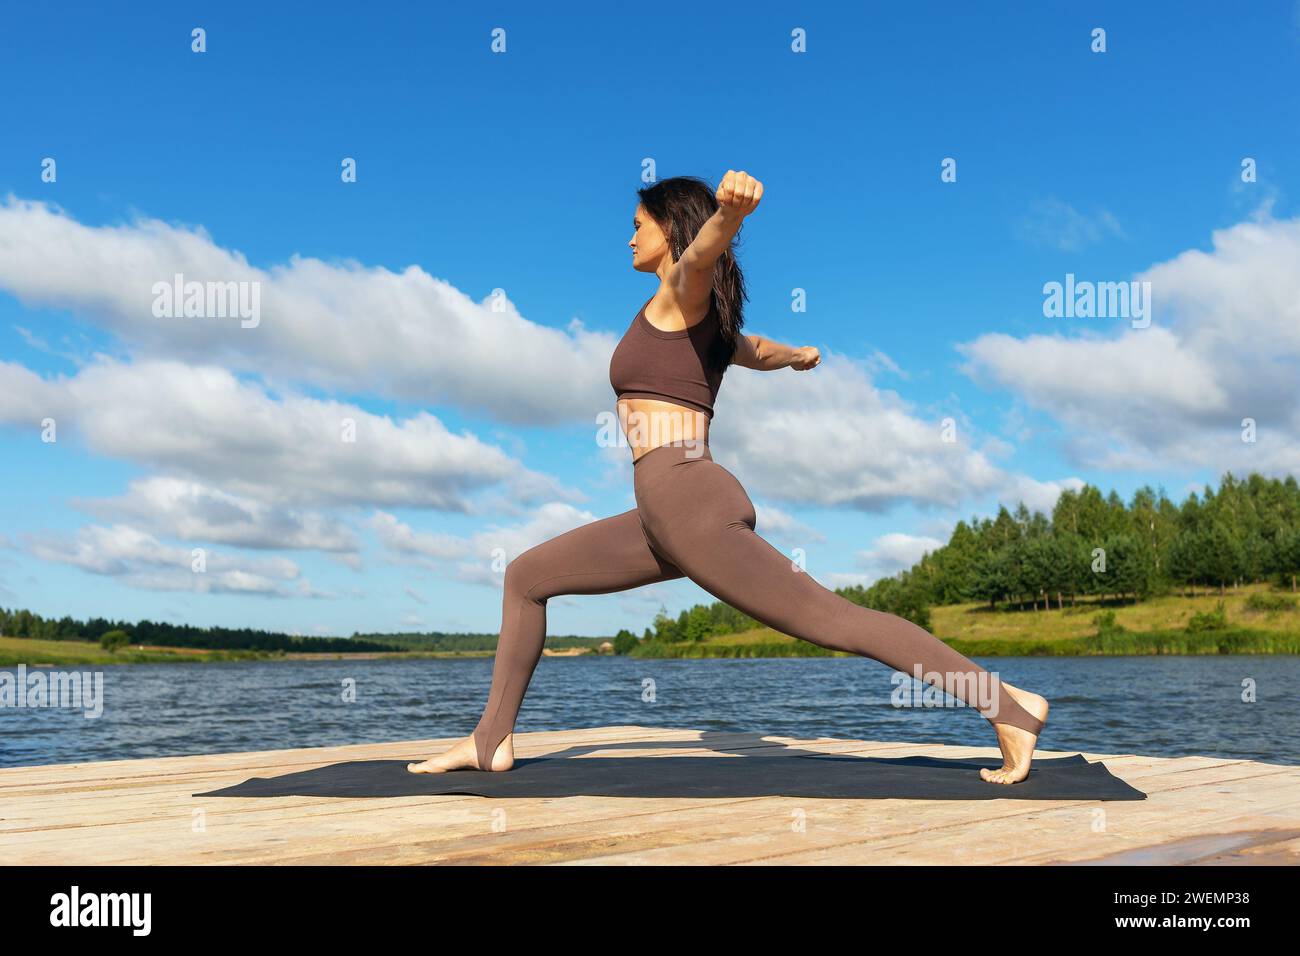 Attraktive Frau, die eine Variation von Virabhadrasana-Übungen, Kriegerstellung, Training in Leggings und einem kurzen Top macht, während sie am Ufer steht Stockfoto